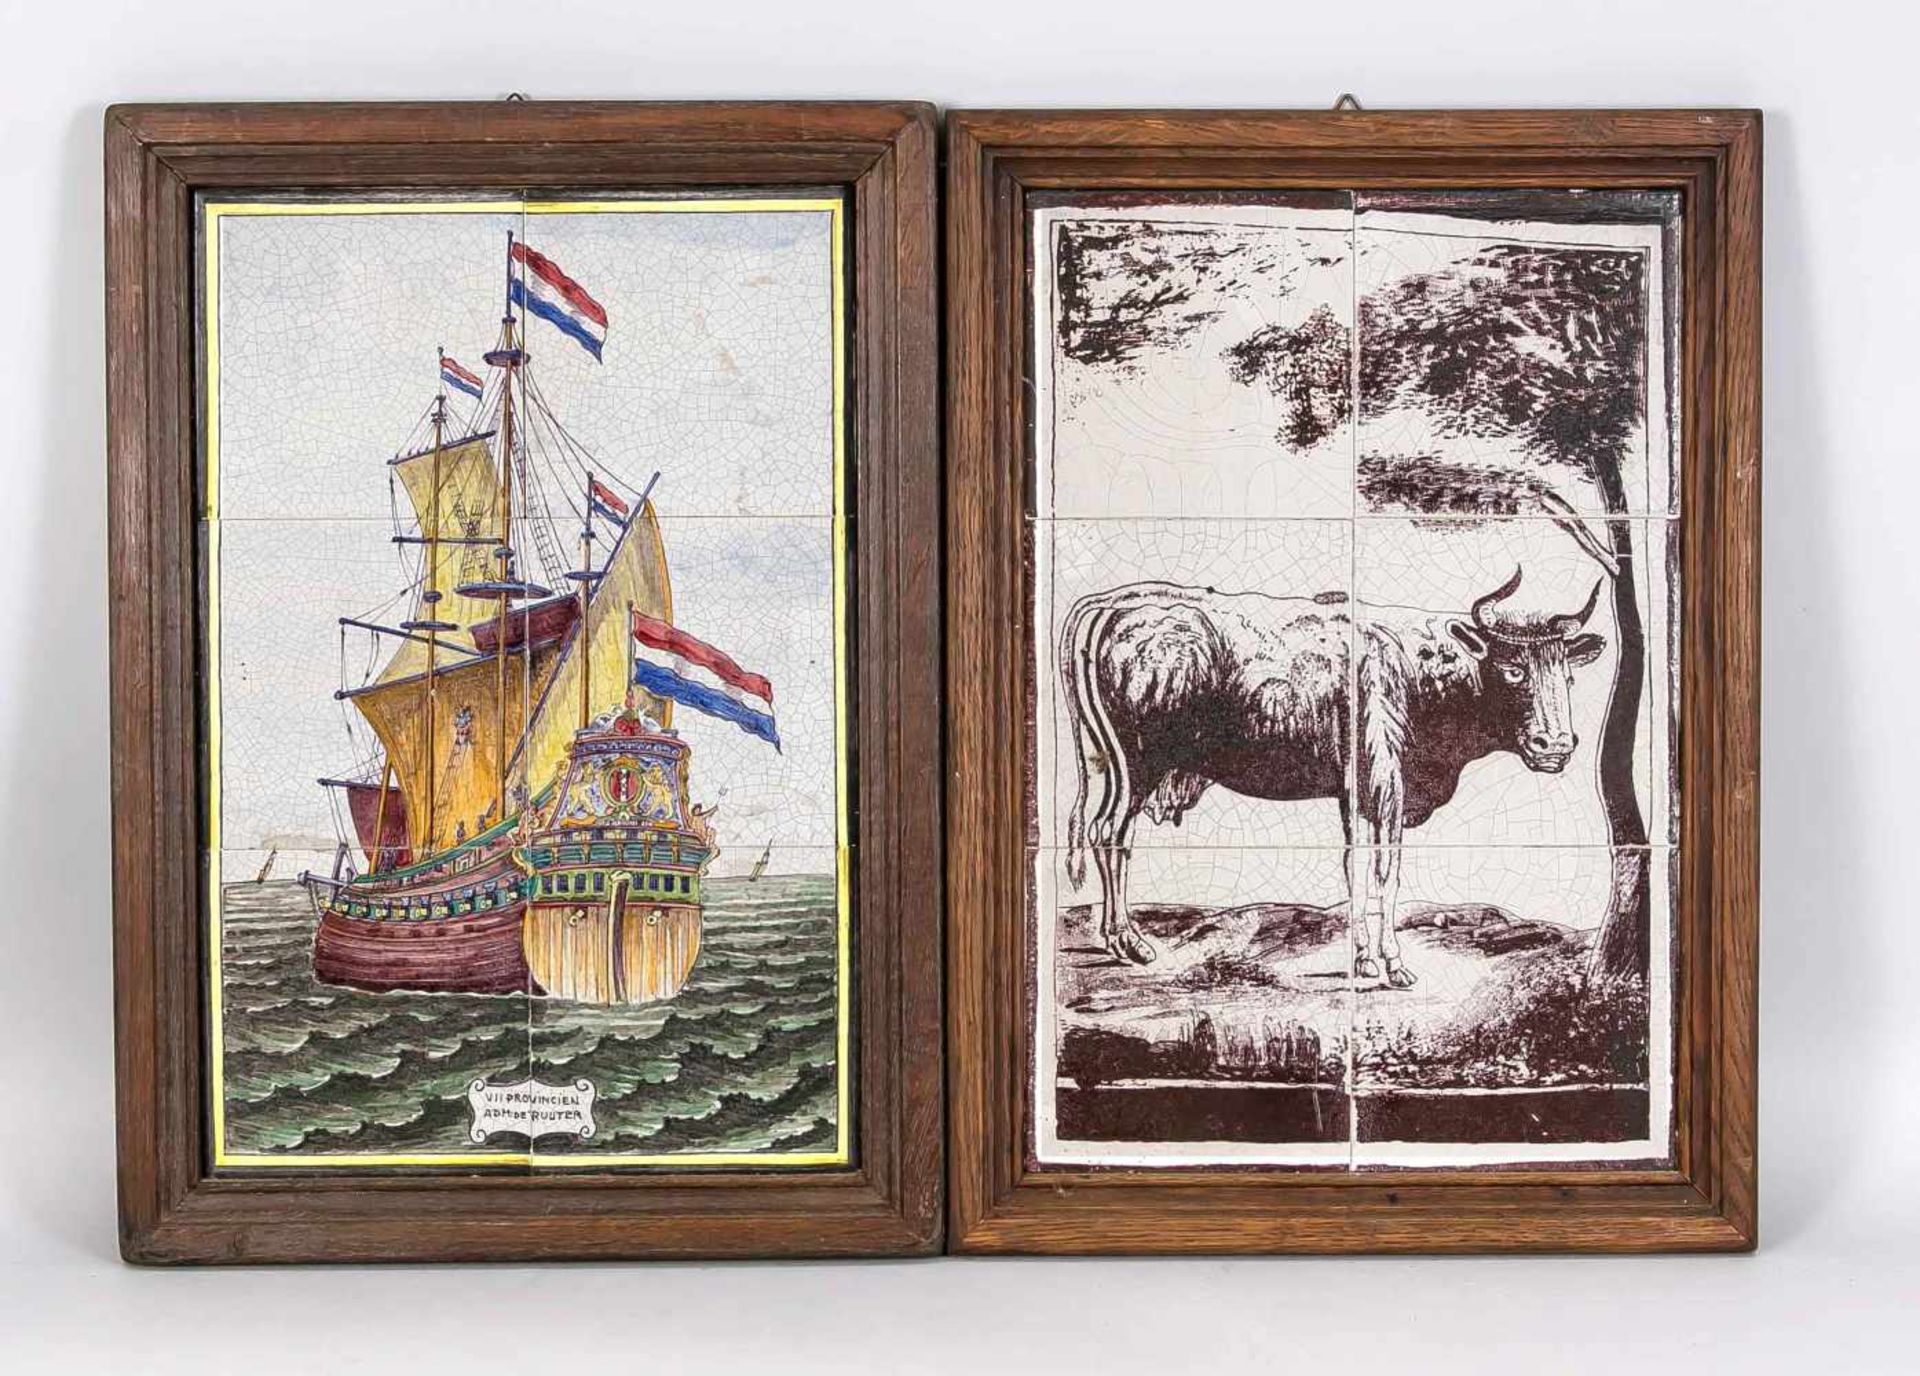 2 Fliesenbilder im alten Stil, Niederlande (Makkum), 20. Jh., 1 x hochformatig, bestehend